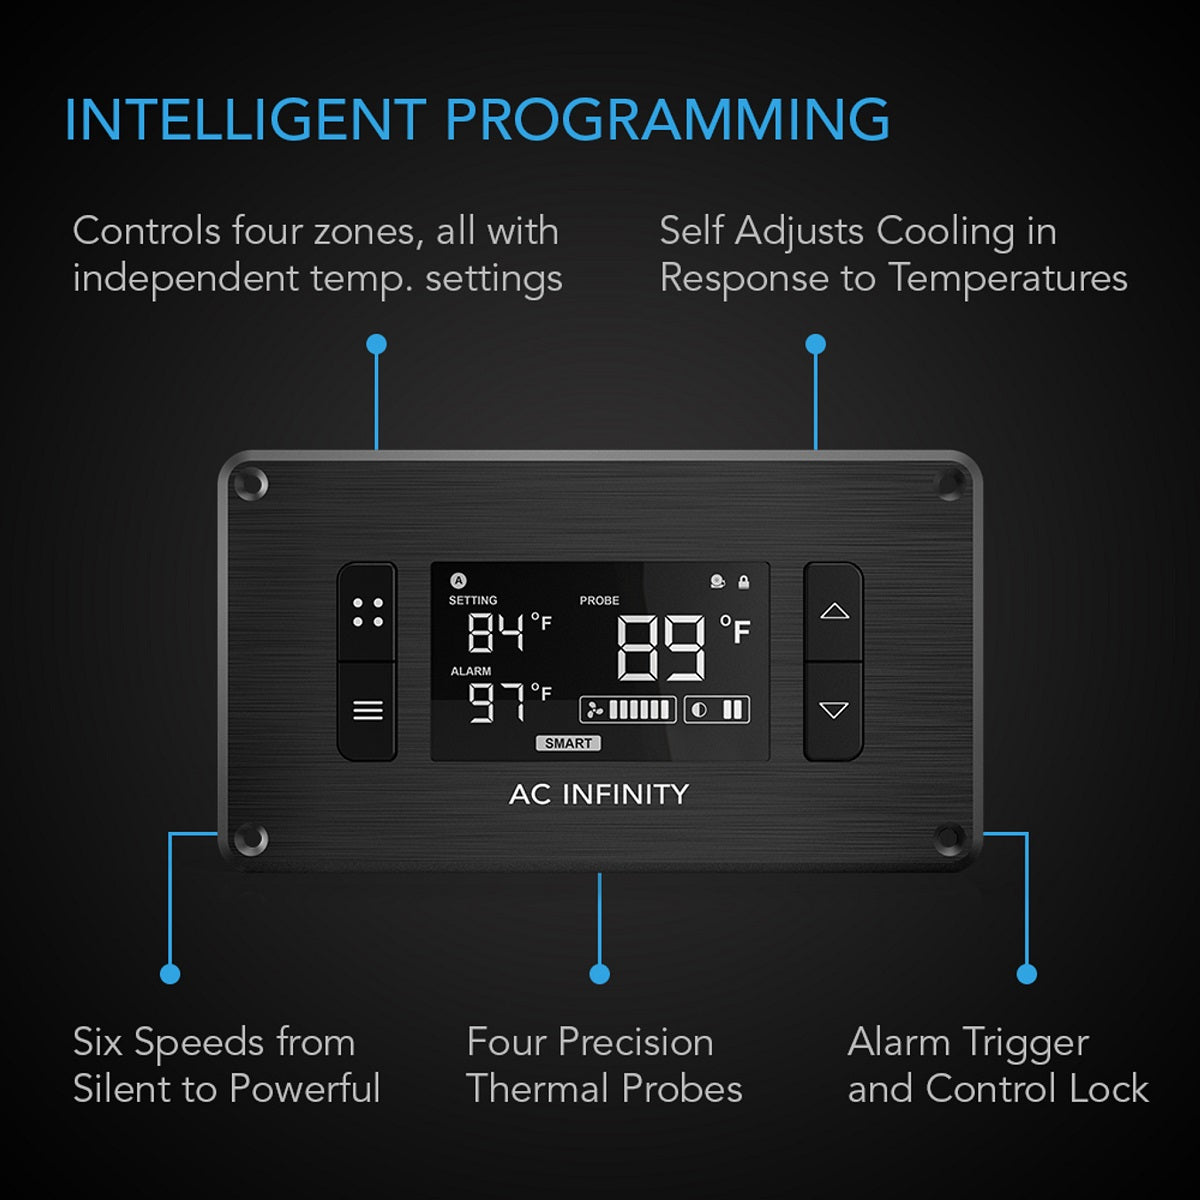 AC Infinity Controller 8 - controlla la temperatura e l'umidità in 4 zone